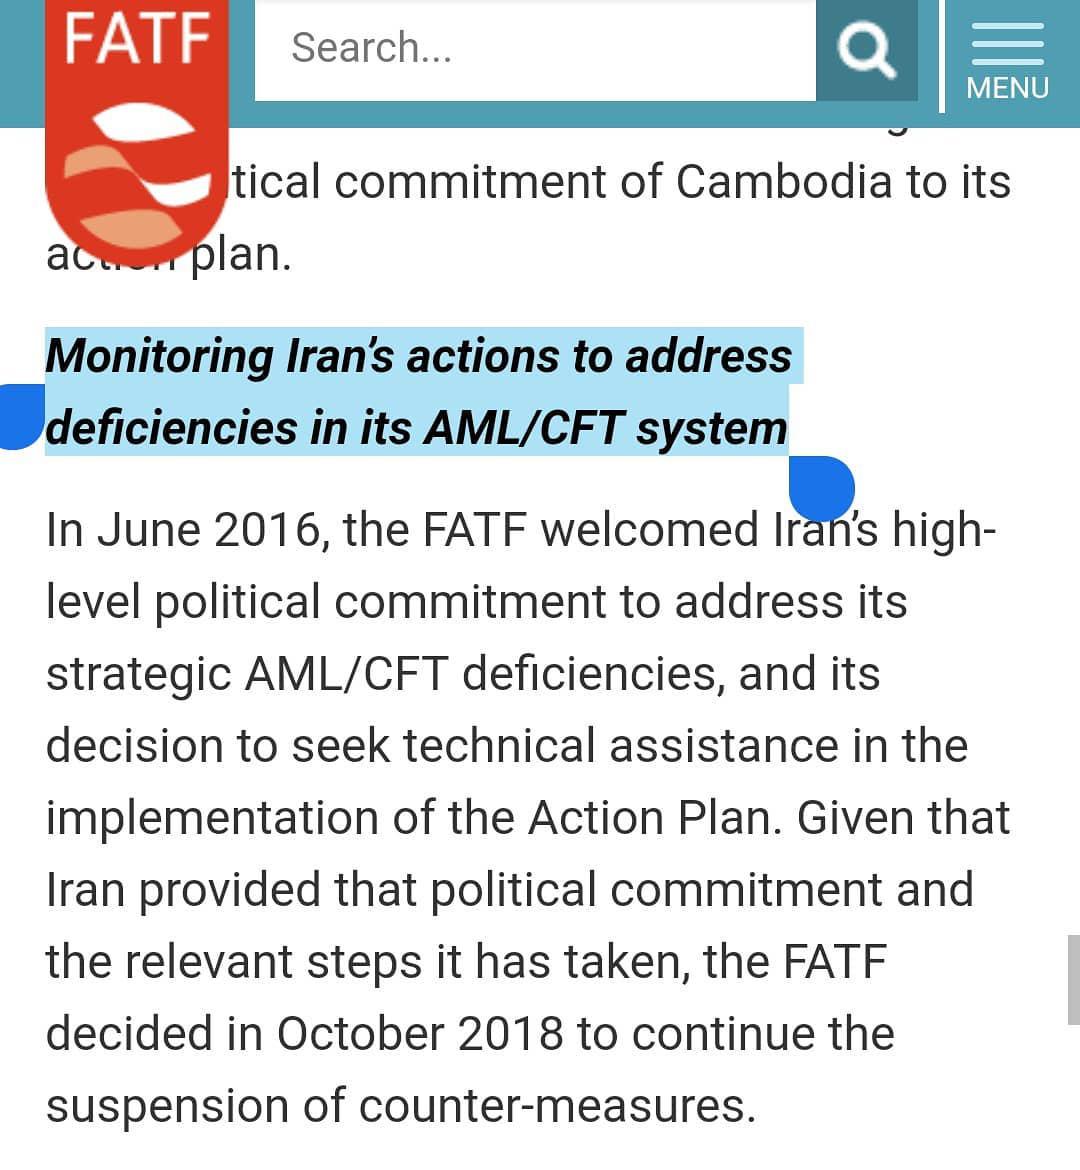 تمدید تعلیق اقدامات تقابلی FATF علیه ایران تاچهار ماه آینده